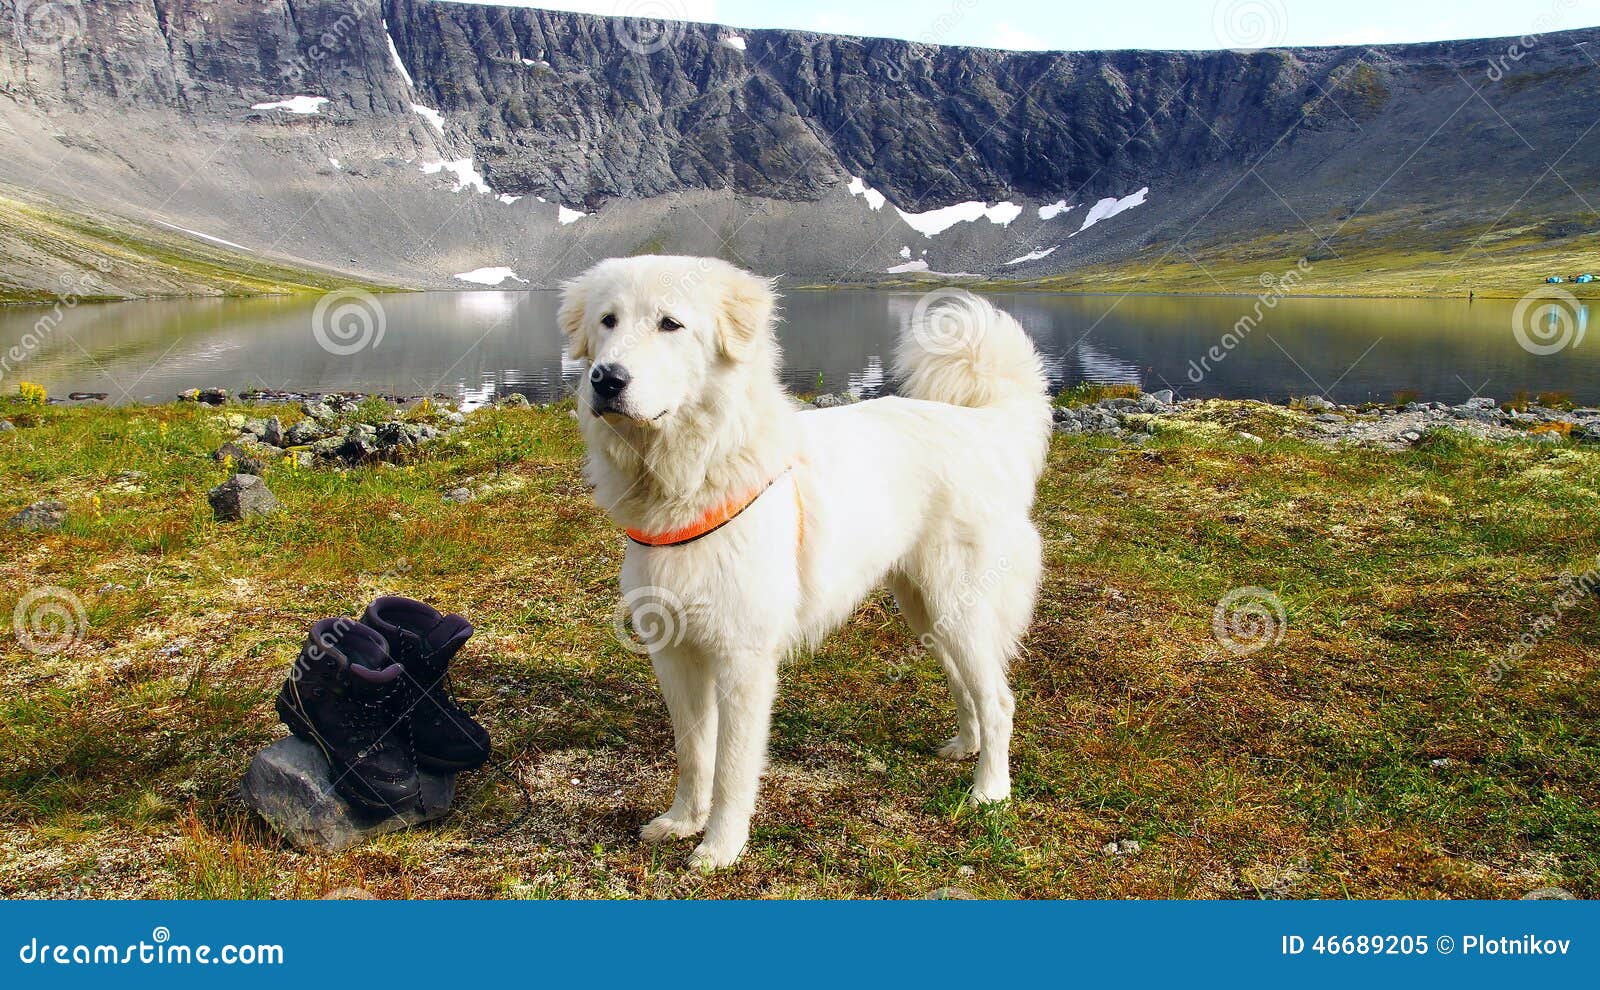 anatolian shepherd dog.